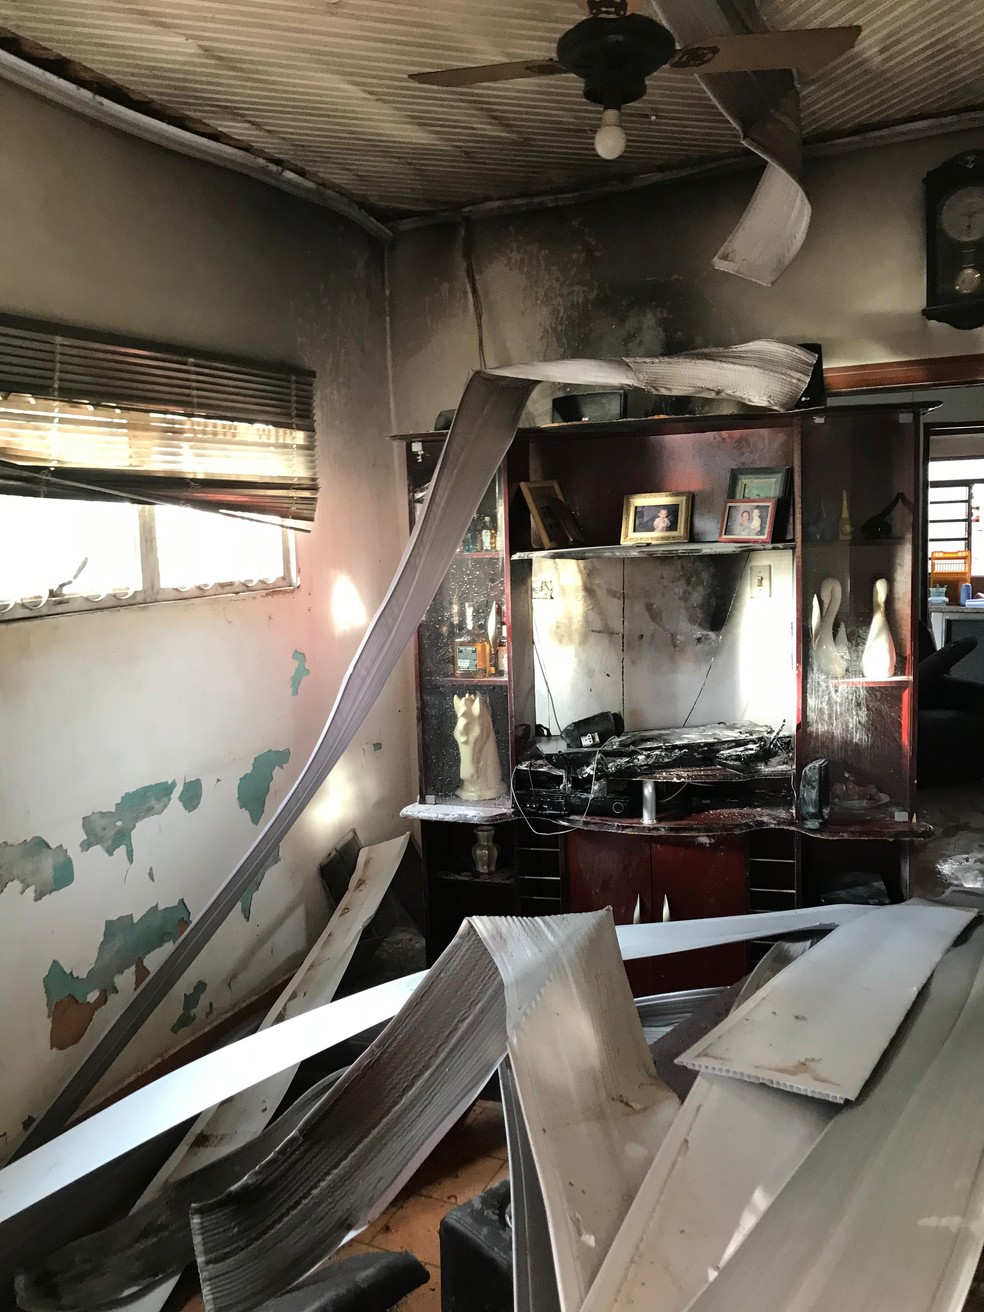 Raio atinge casa e provoca incêndio com morador deficiente físico dentro do imóvel, em Lucélia (SP) — Foto: Defesa Civil